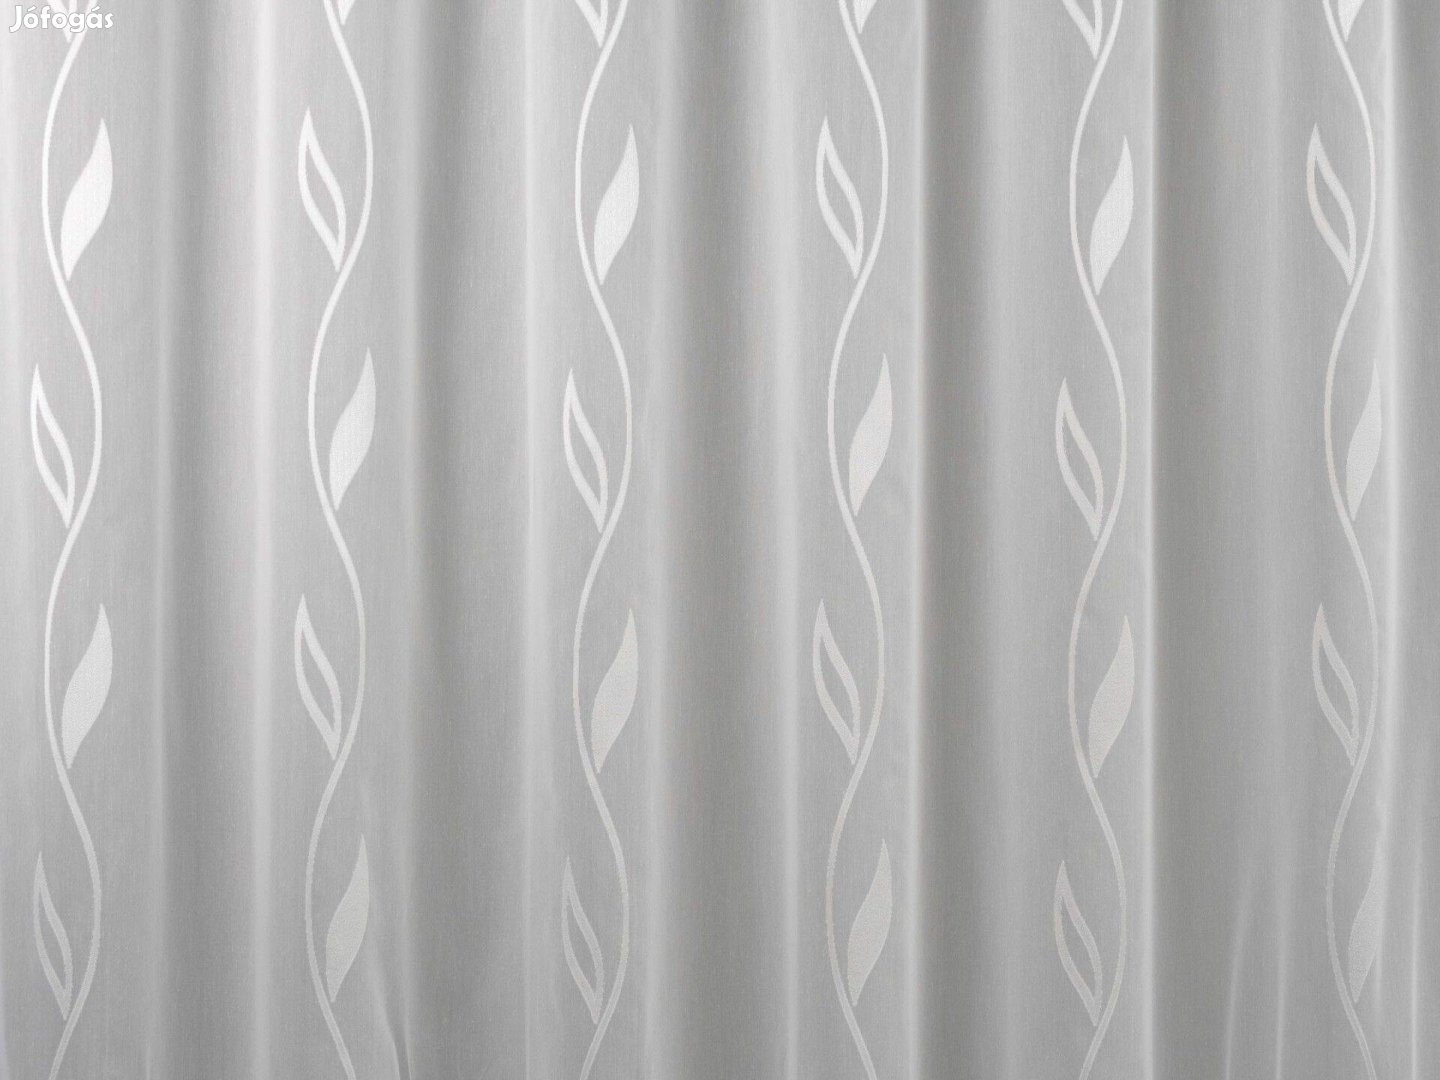 Új hófehér hullám mintás függöny (4,7m x 180 cm)